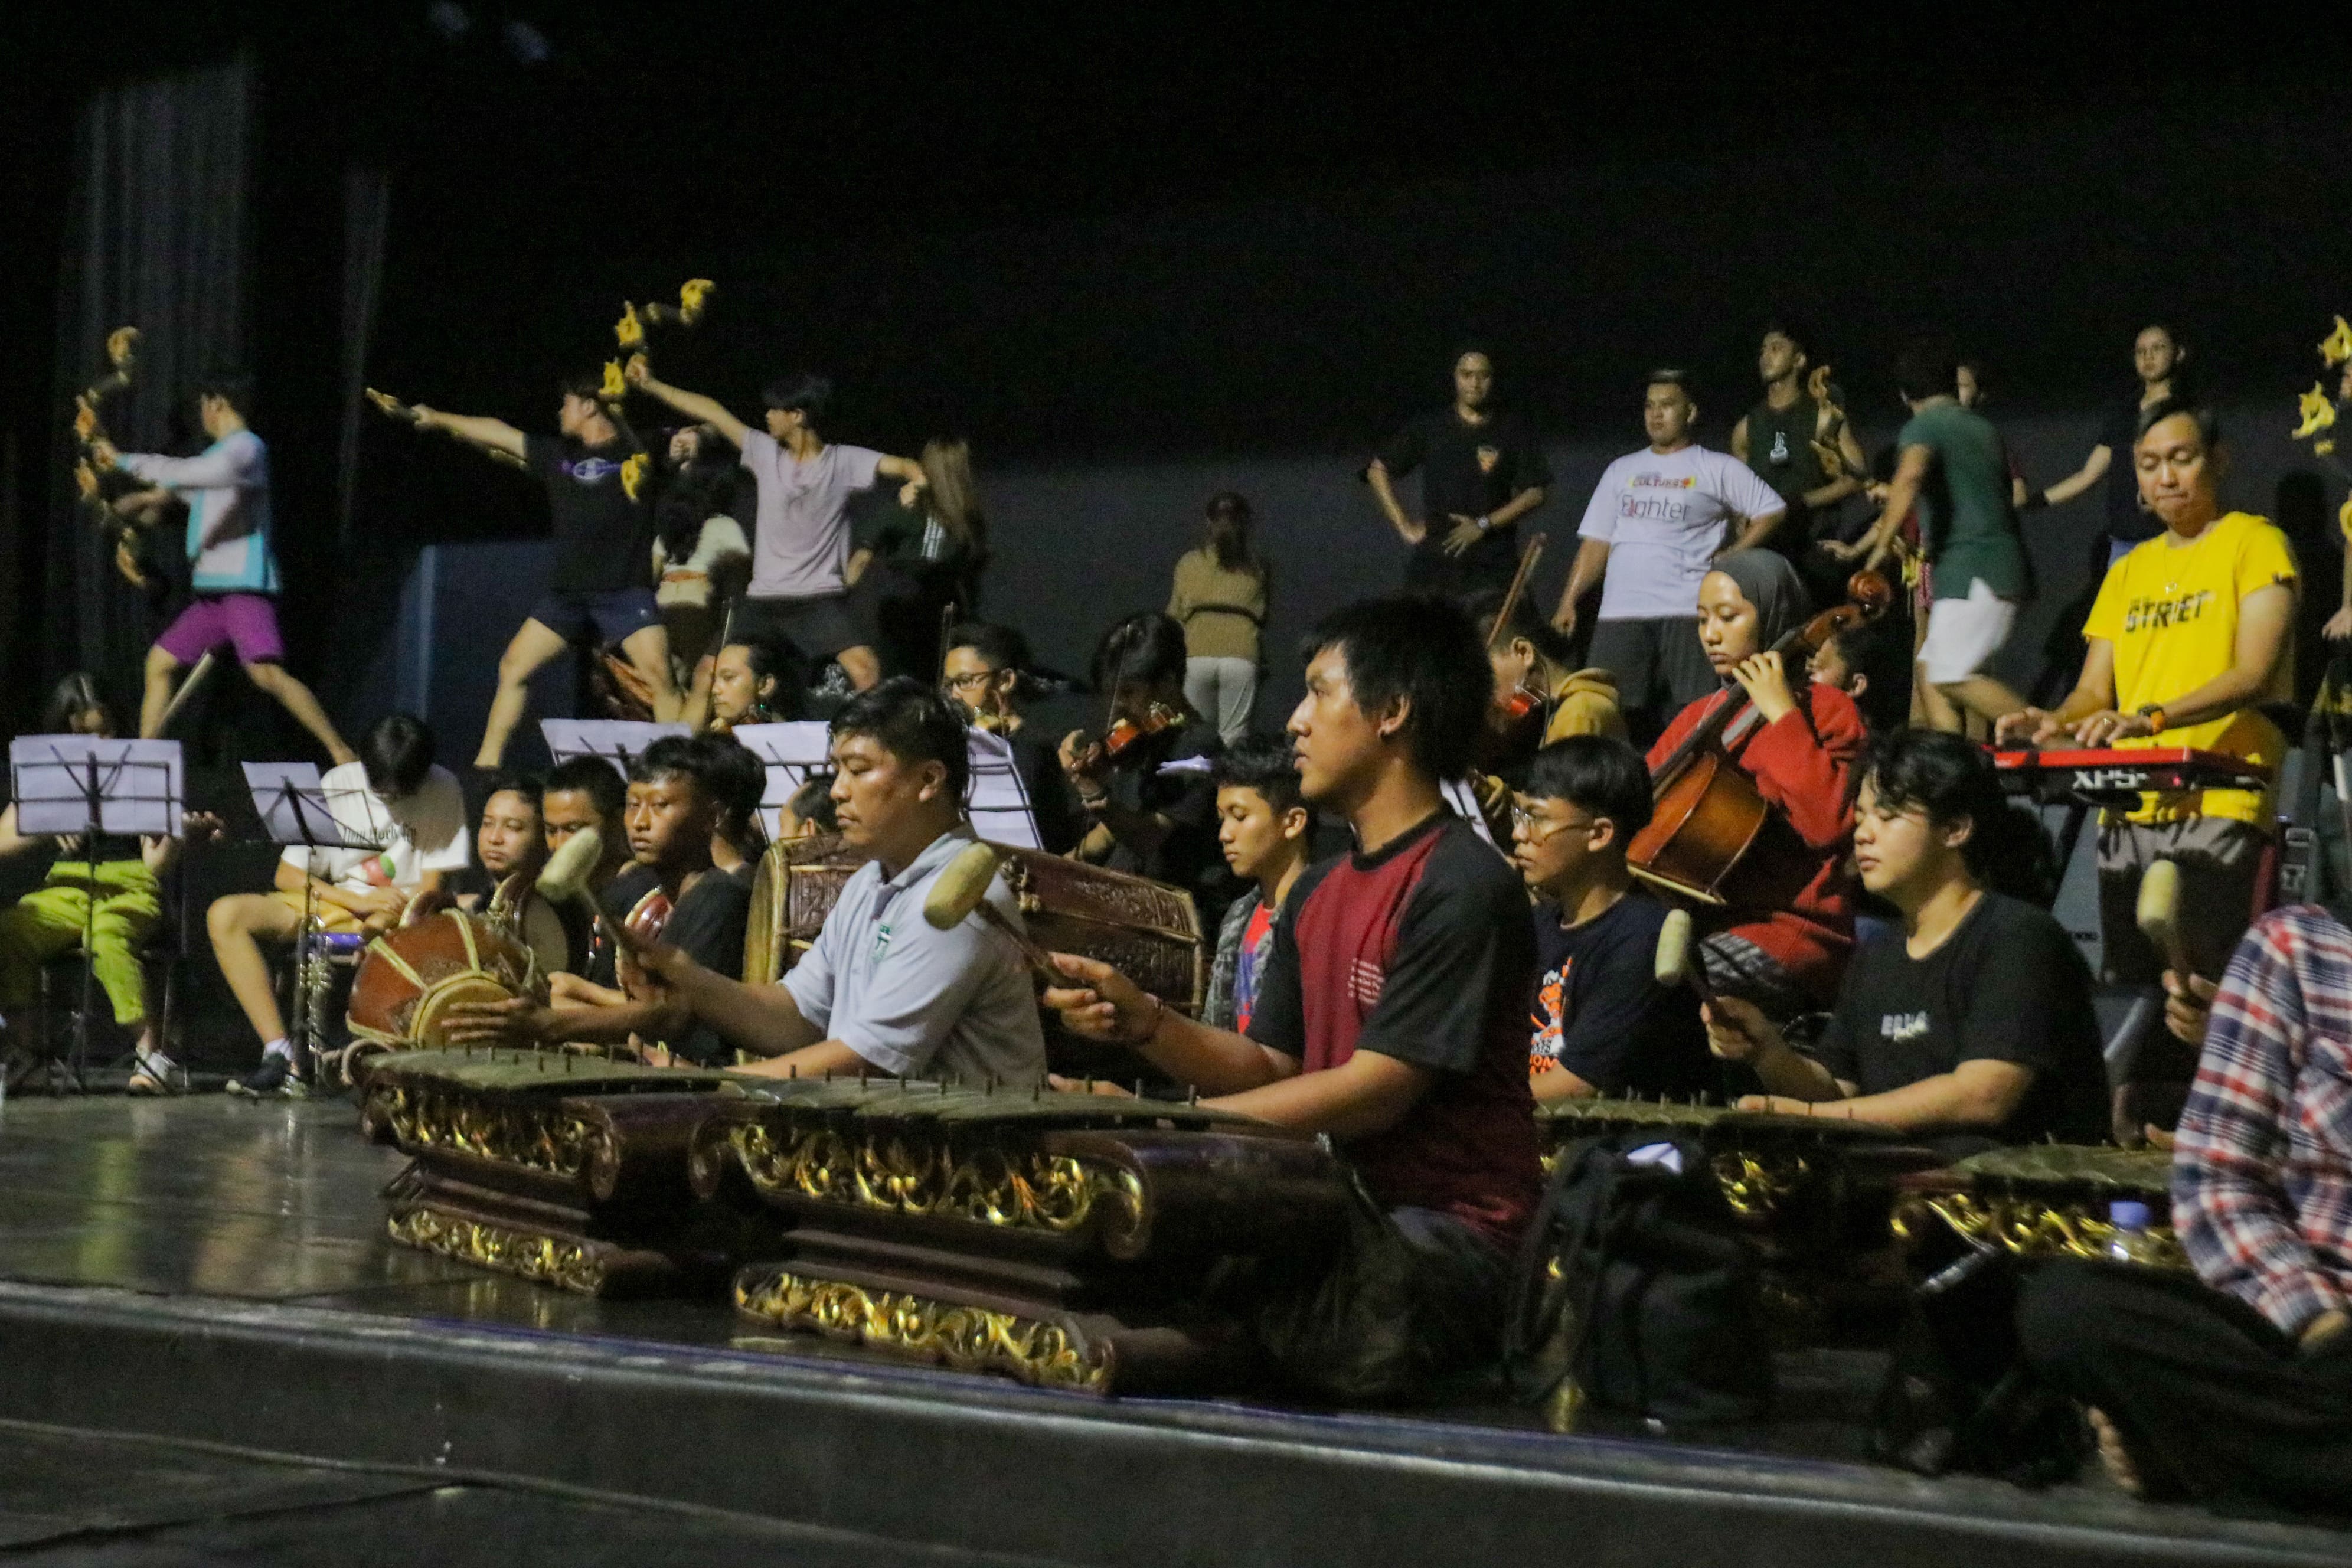 Di Balik Persiapan Hari Musik Nasional Cak Durasim Surabaya